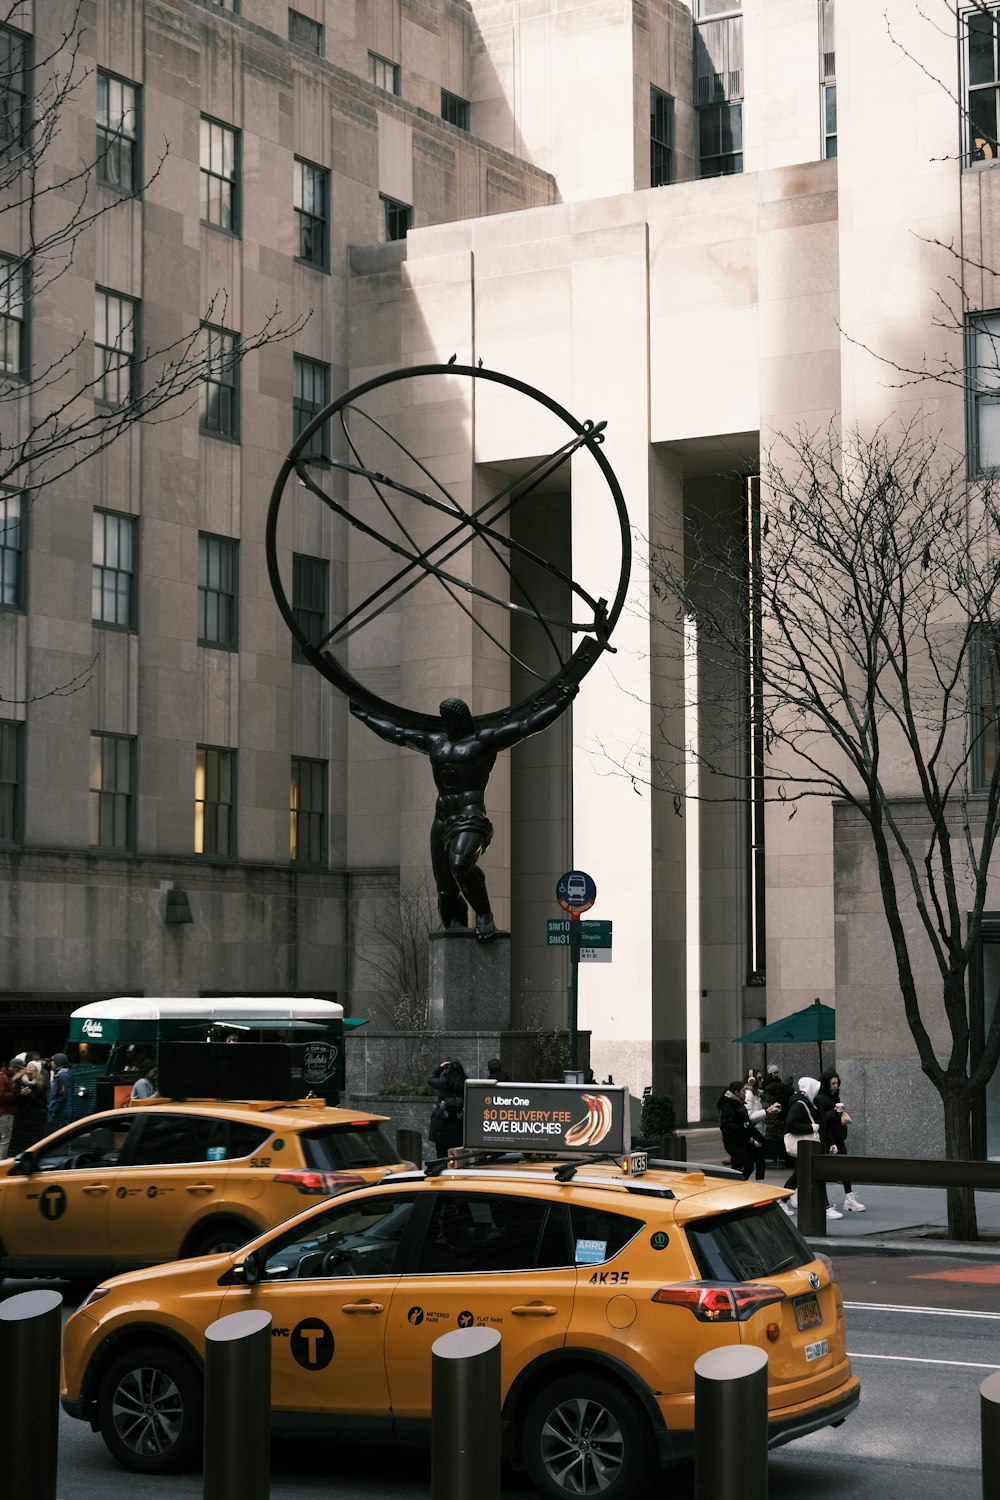 タクシーと彫像のある通りのシーン